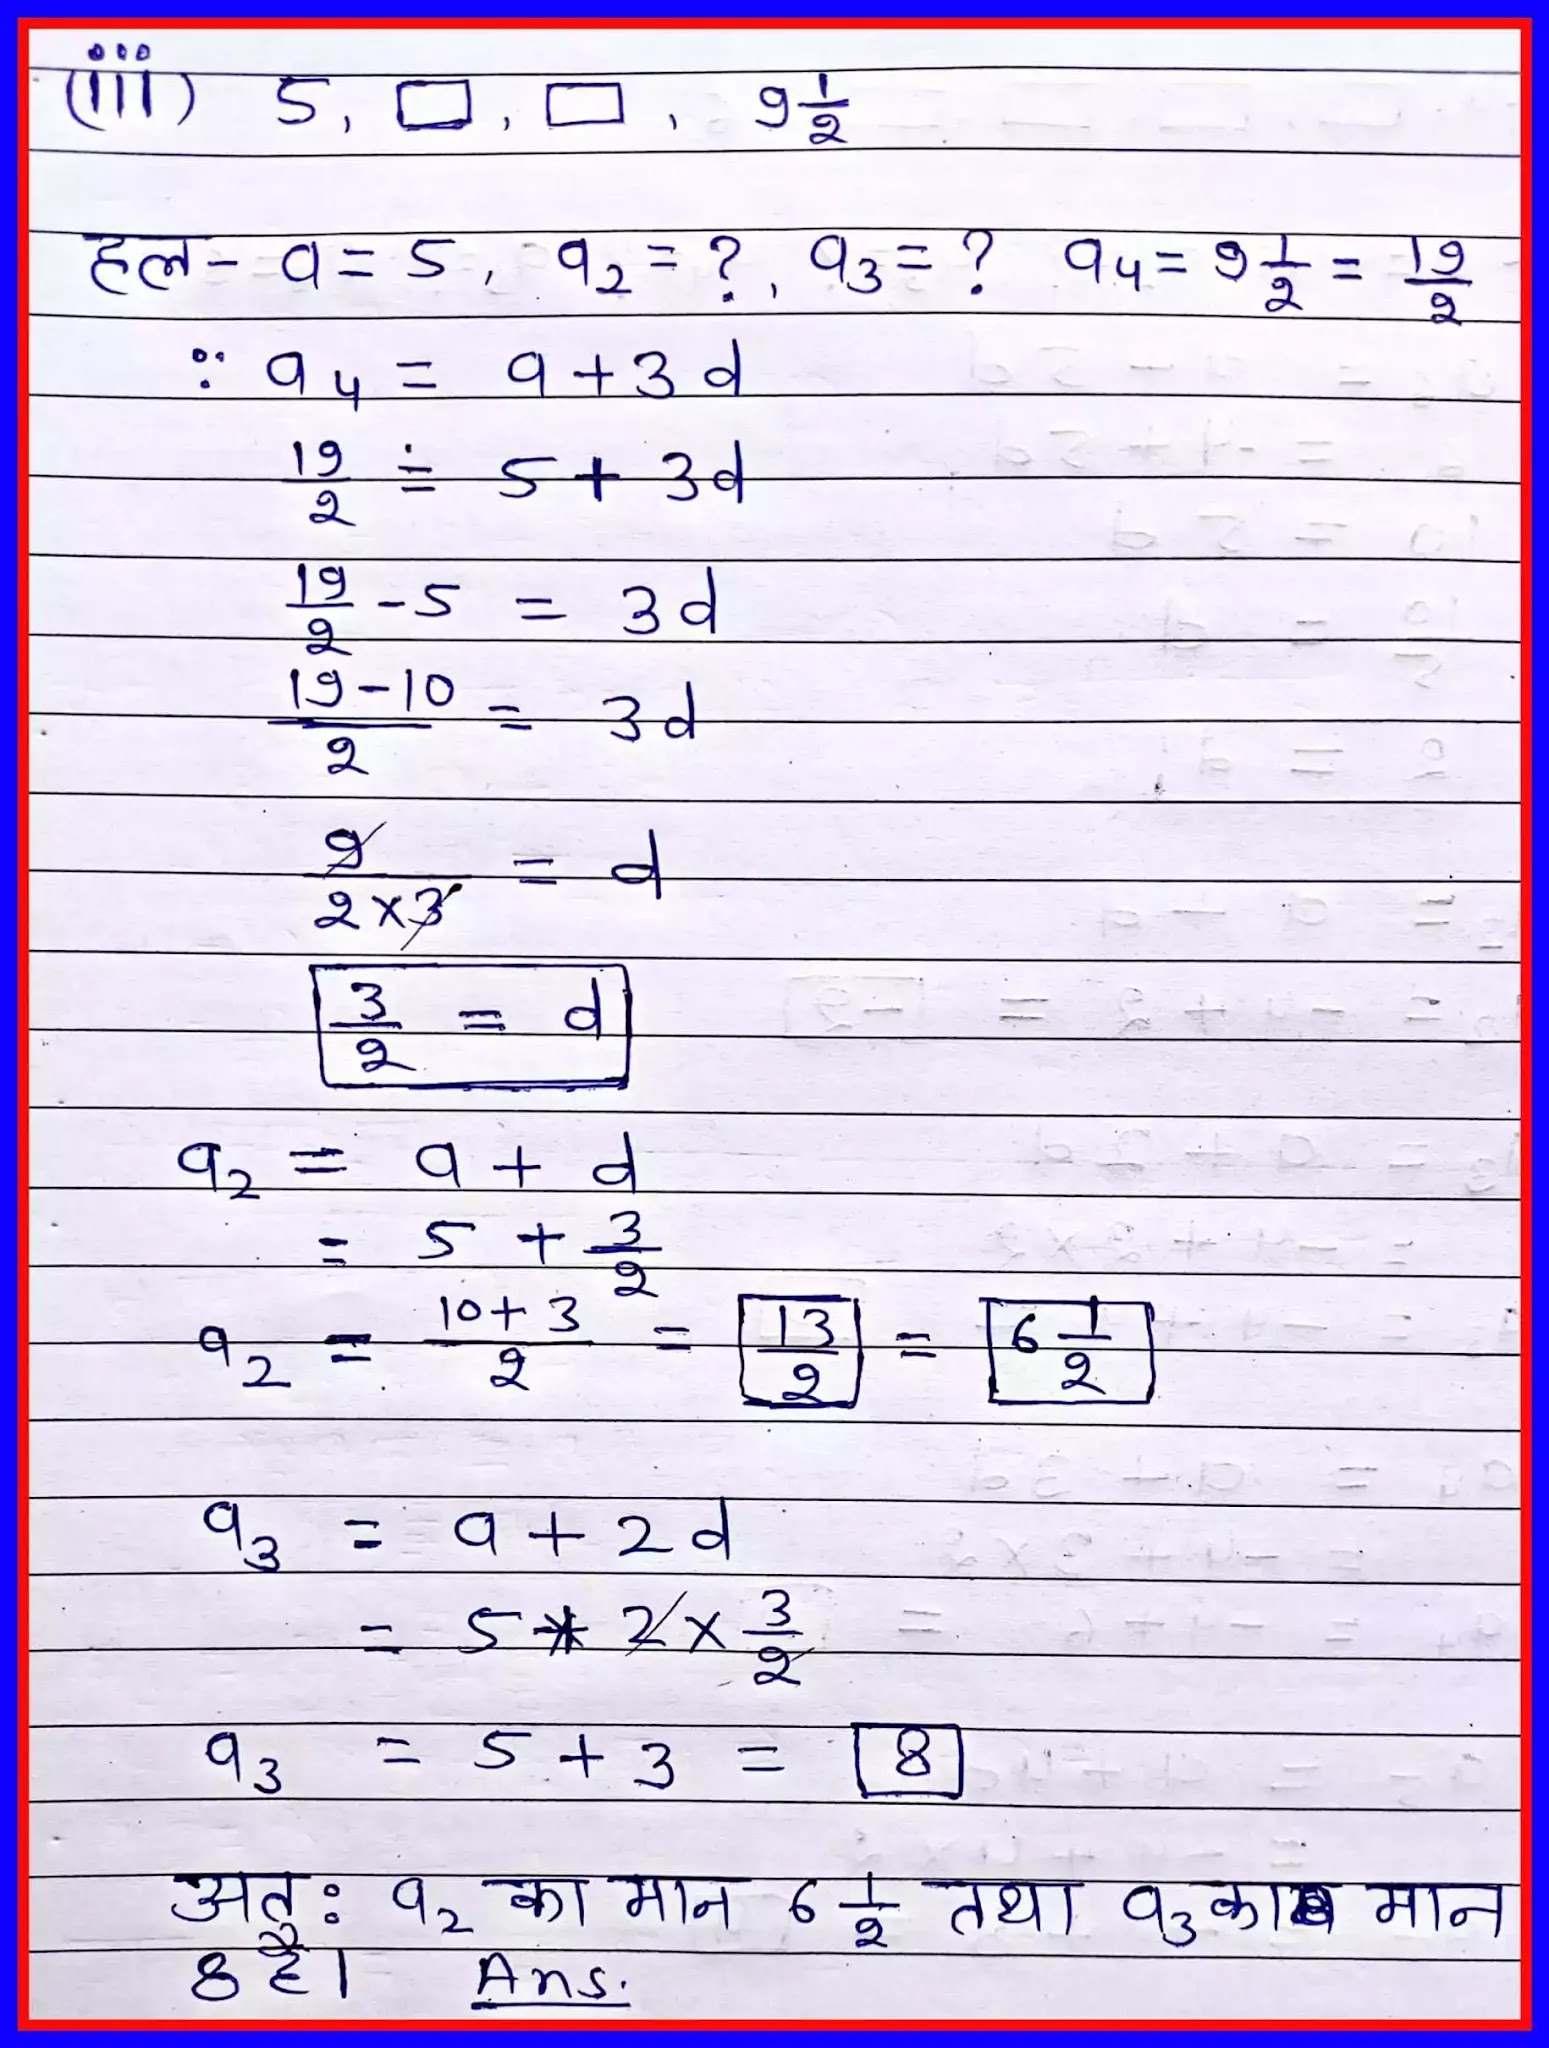 class 10 maths solutions, class 10 maths chapter 5, class 10 maths solutions chapter 5 exercise 5.2, class 10